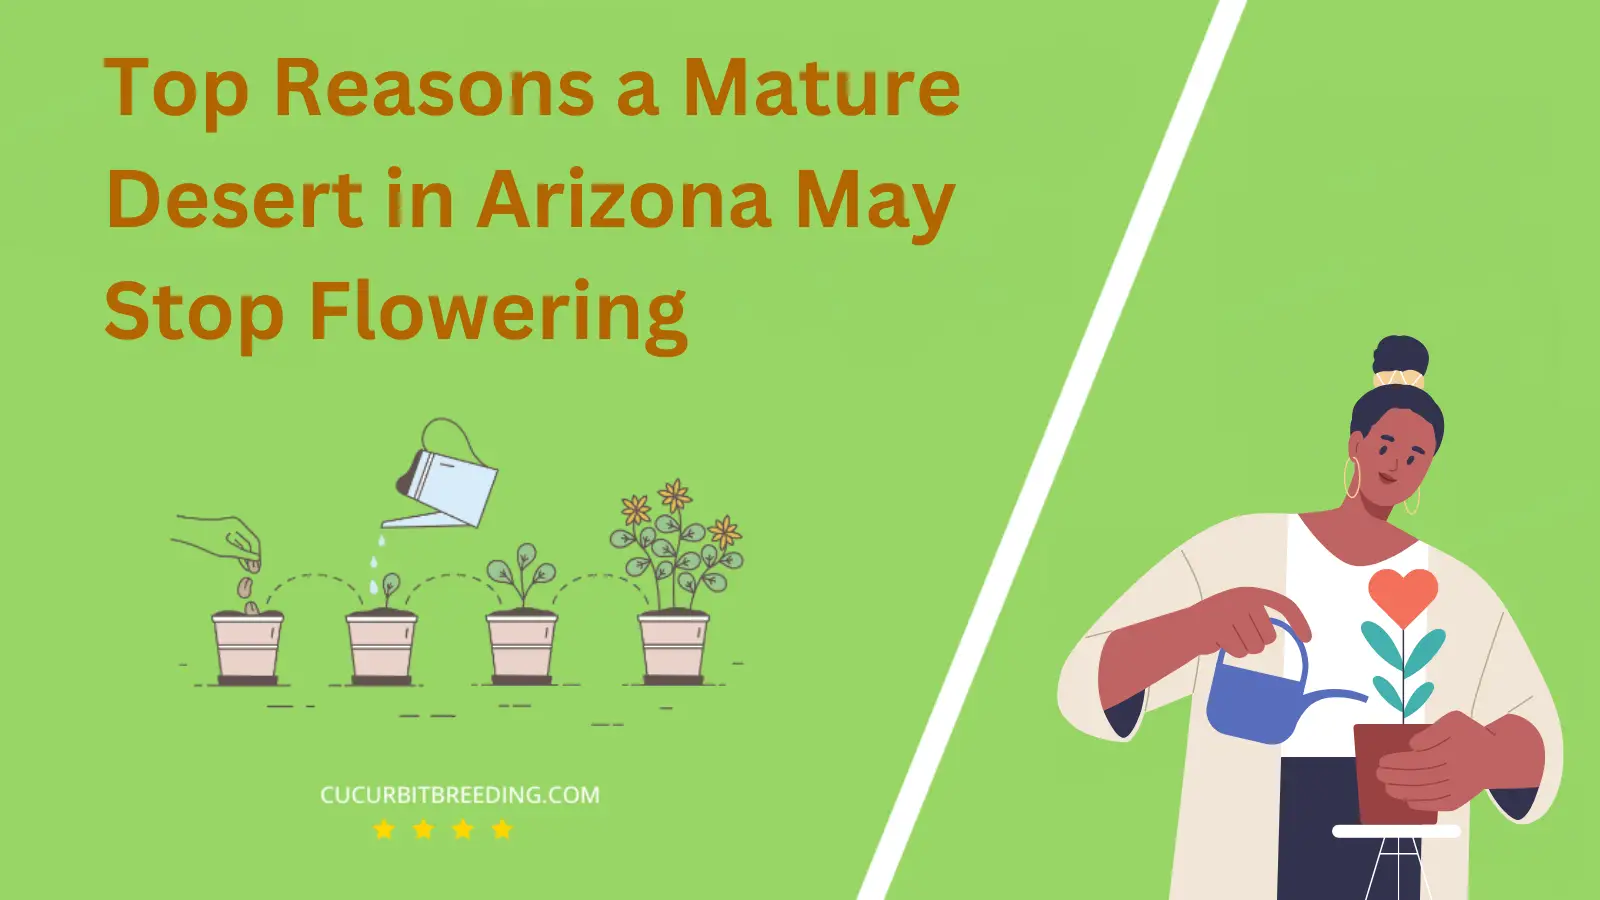 Top Reasons a Mature Desert in Arizona May Stop Flowering